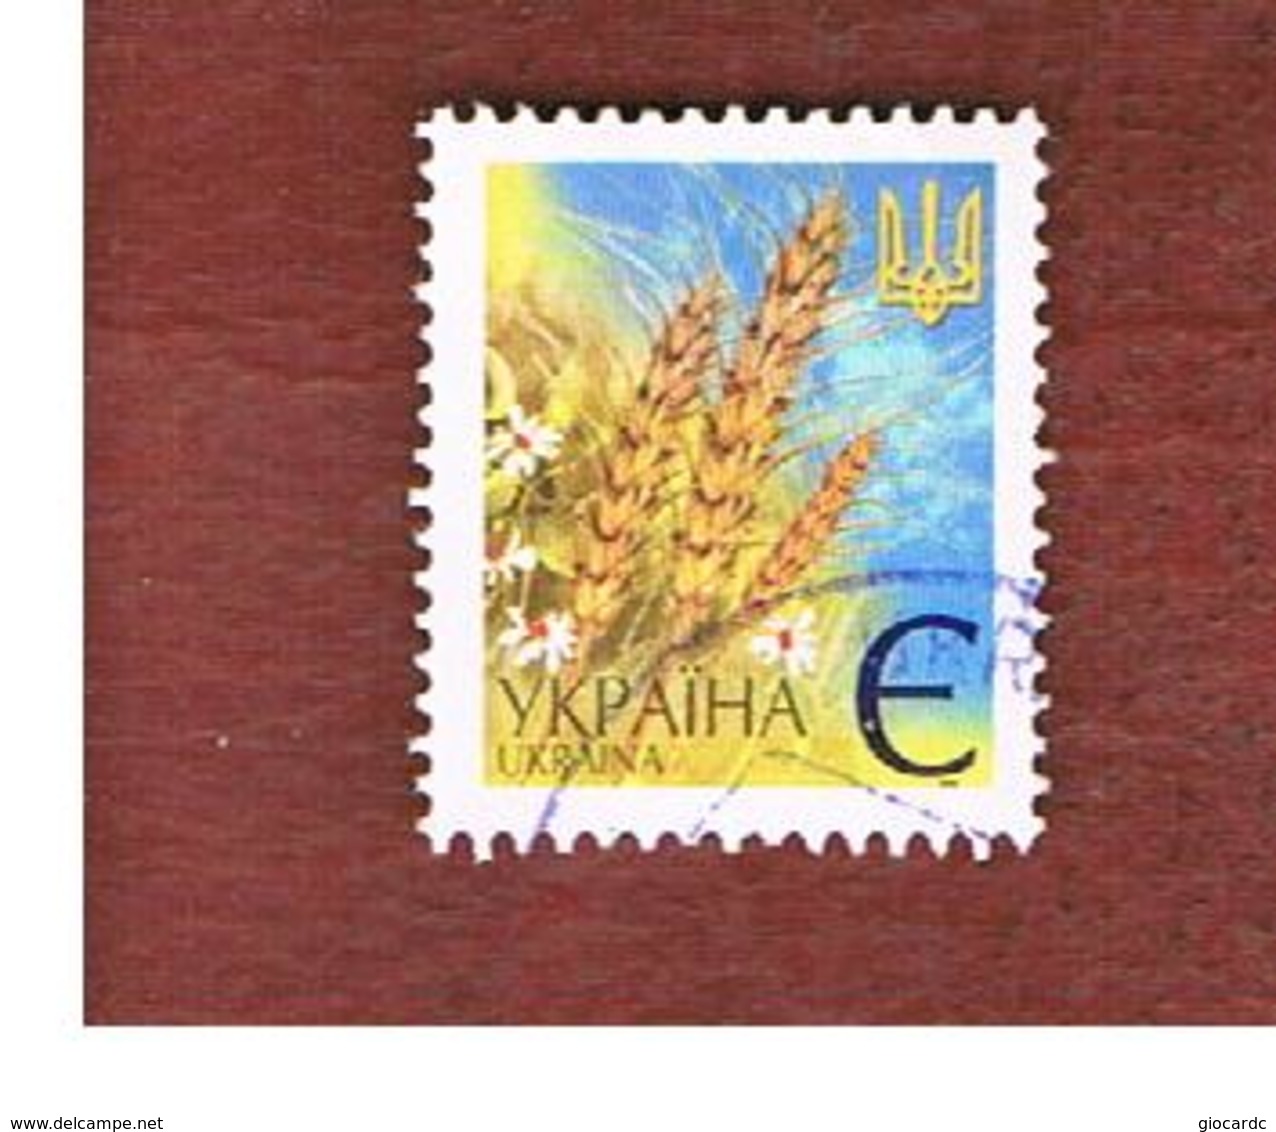 UCRAINA (UKRAINE)  -  MI 437AIV   -  2005  WHEAT EARS -   USED - Ukraine